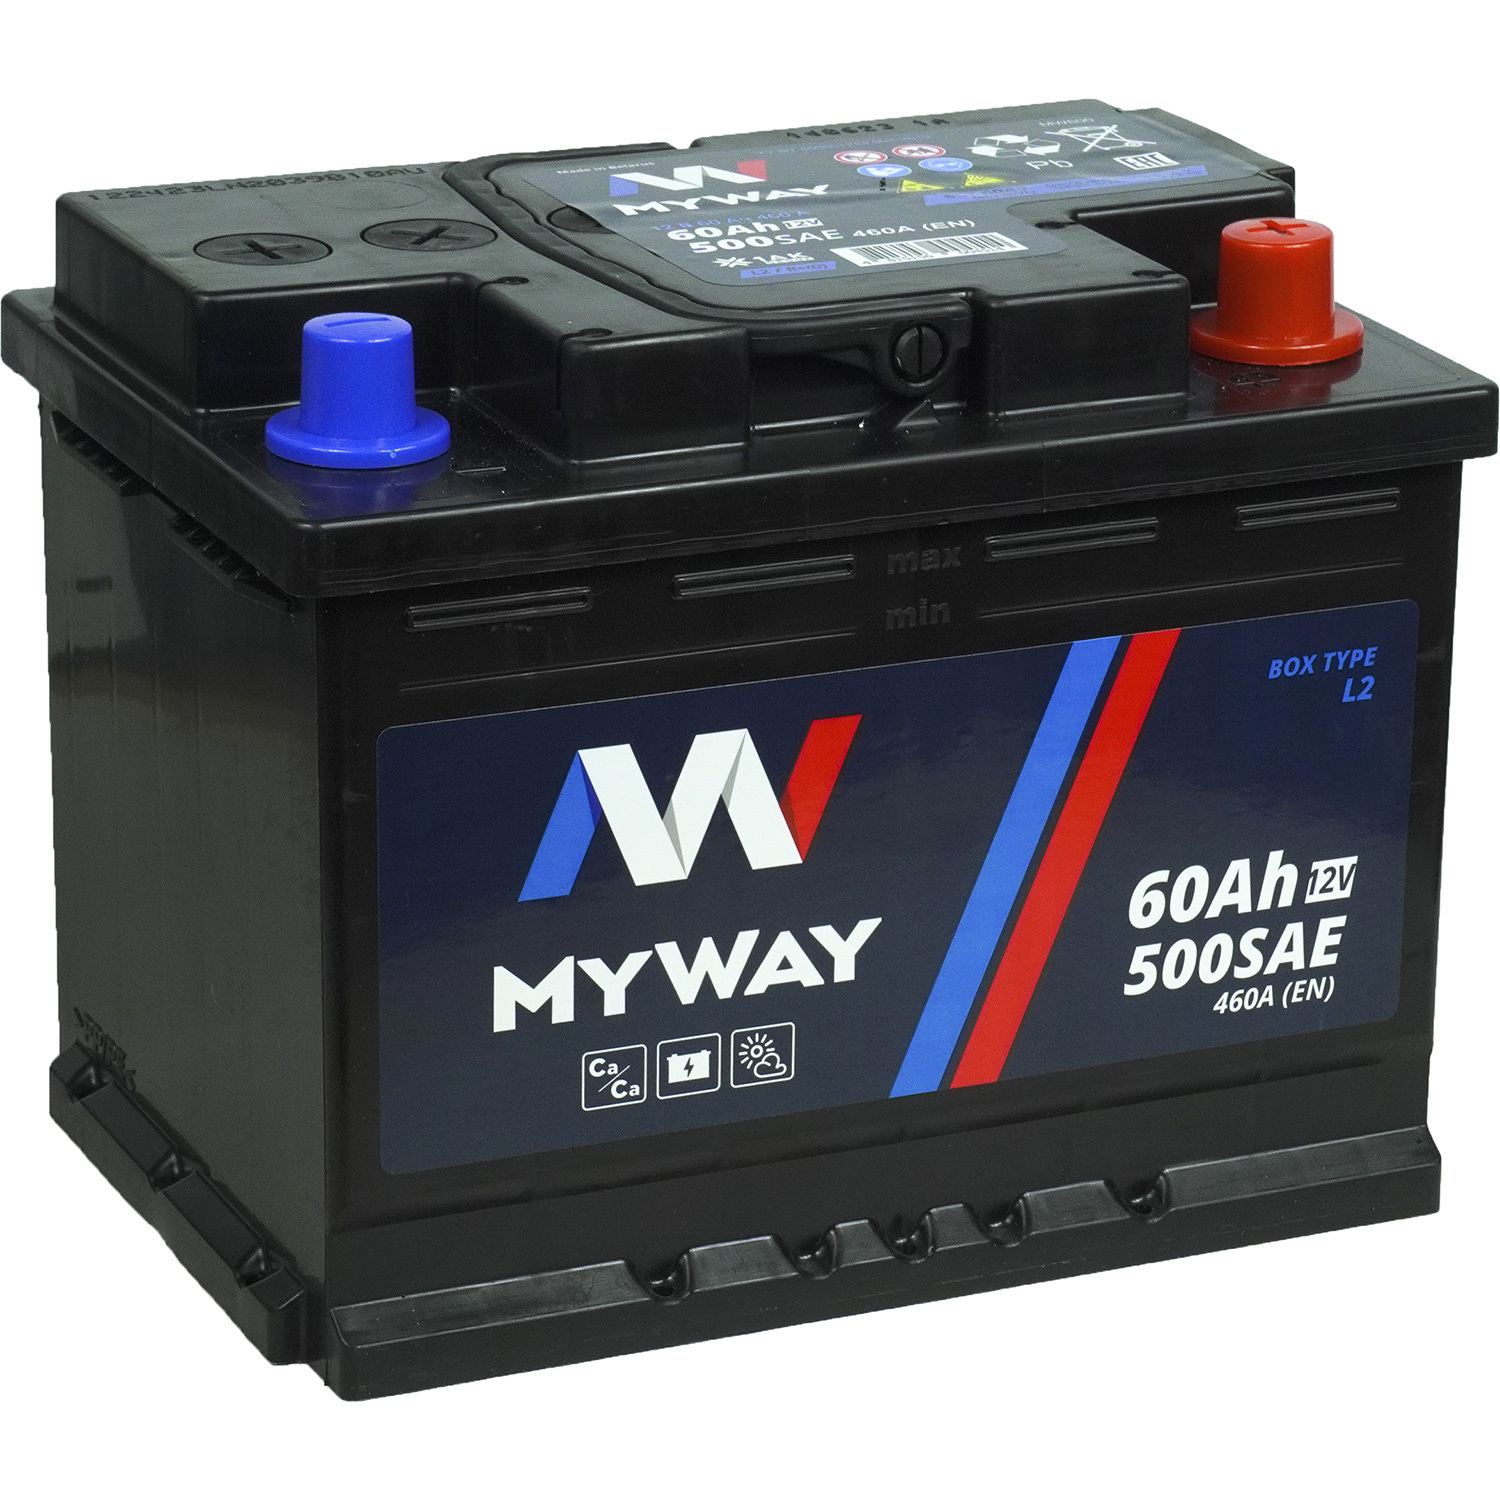 MyWay Автомобильный аккумулятор MyWay 60 Ач обратная полярность L2 myway автомобильный аккумулятор myway 60 ач обратная полярность l2